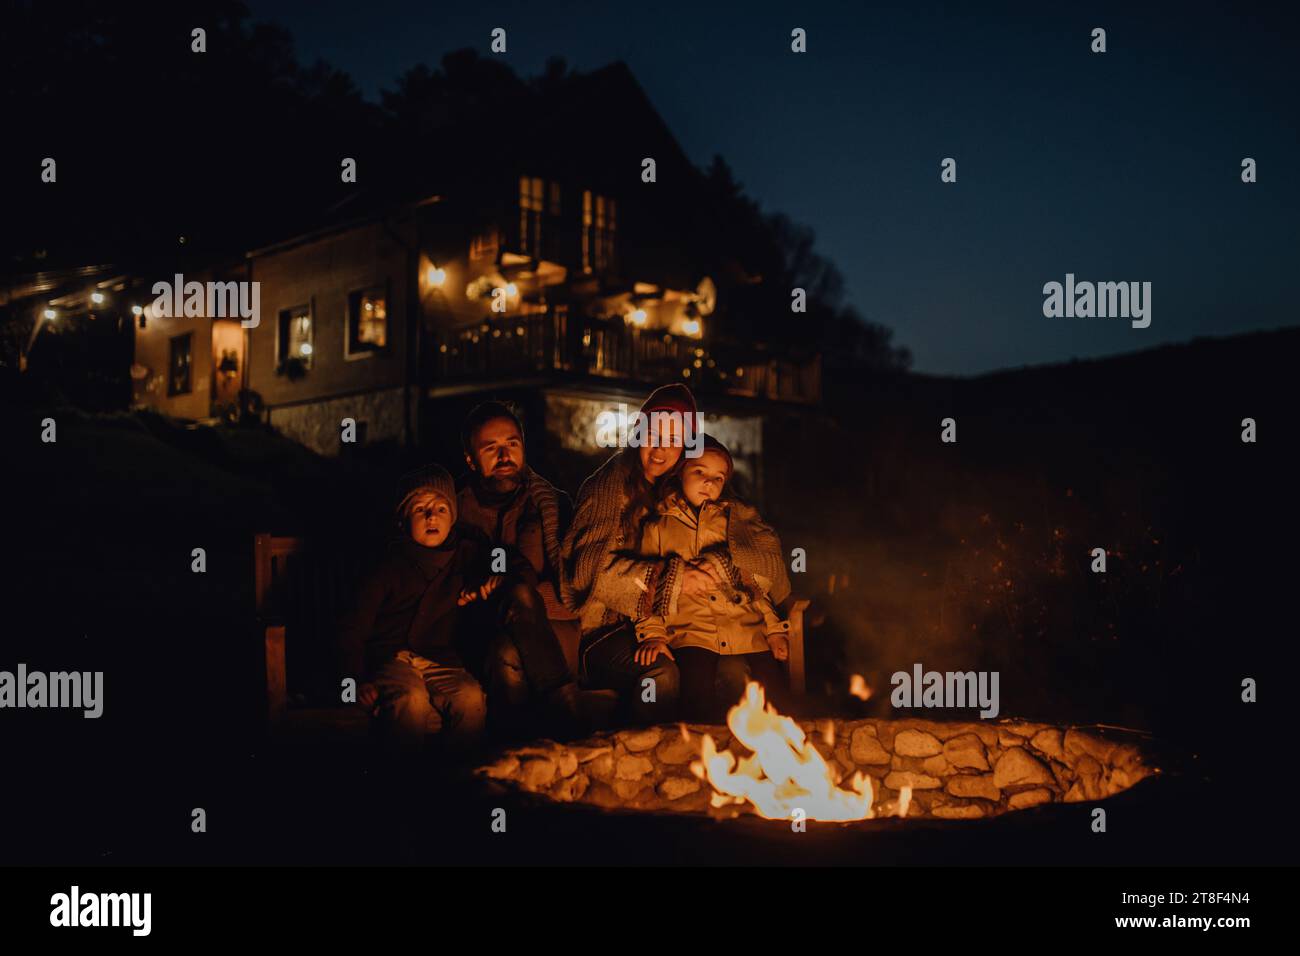 Die Familie wärmt sich an einer Feuerstelle im Freien auf, sitzt in der abendlichen Wärme des Feuers und verbringt gute Familienzeit miteinander. Stockfoto